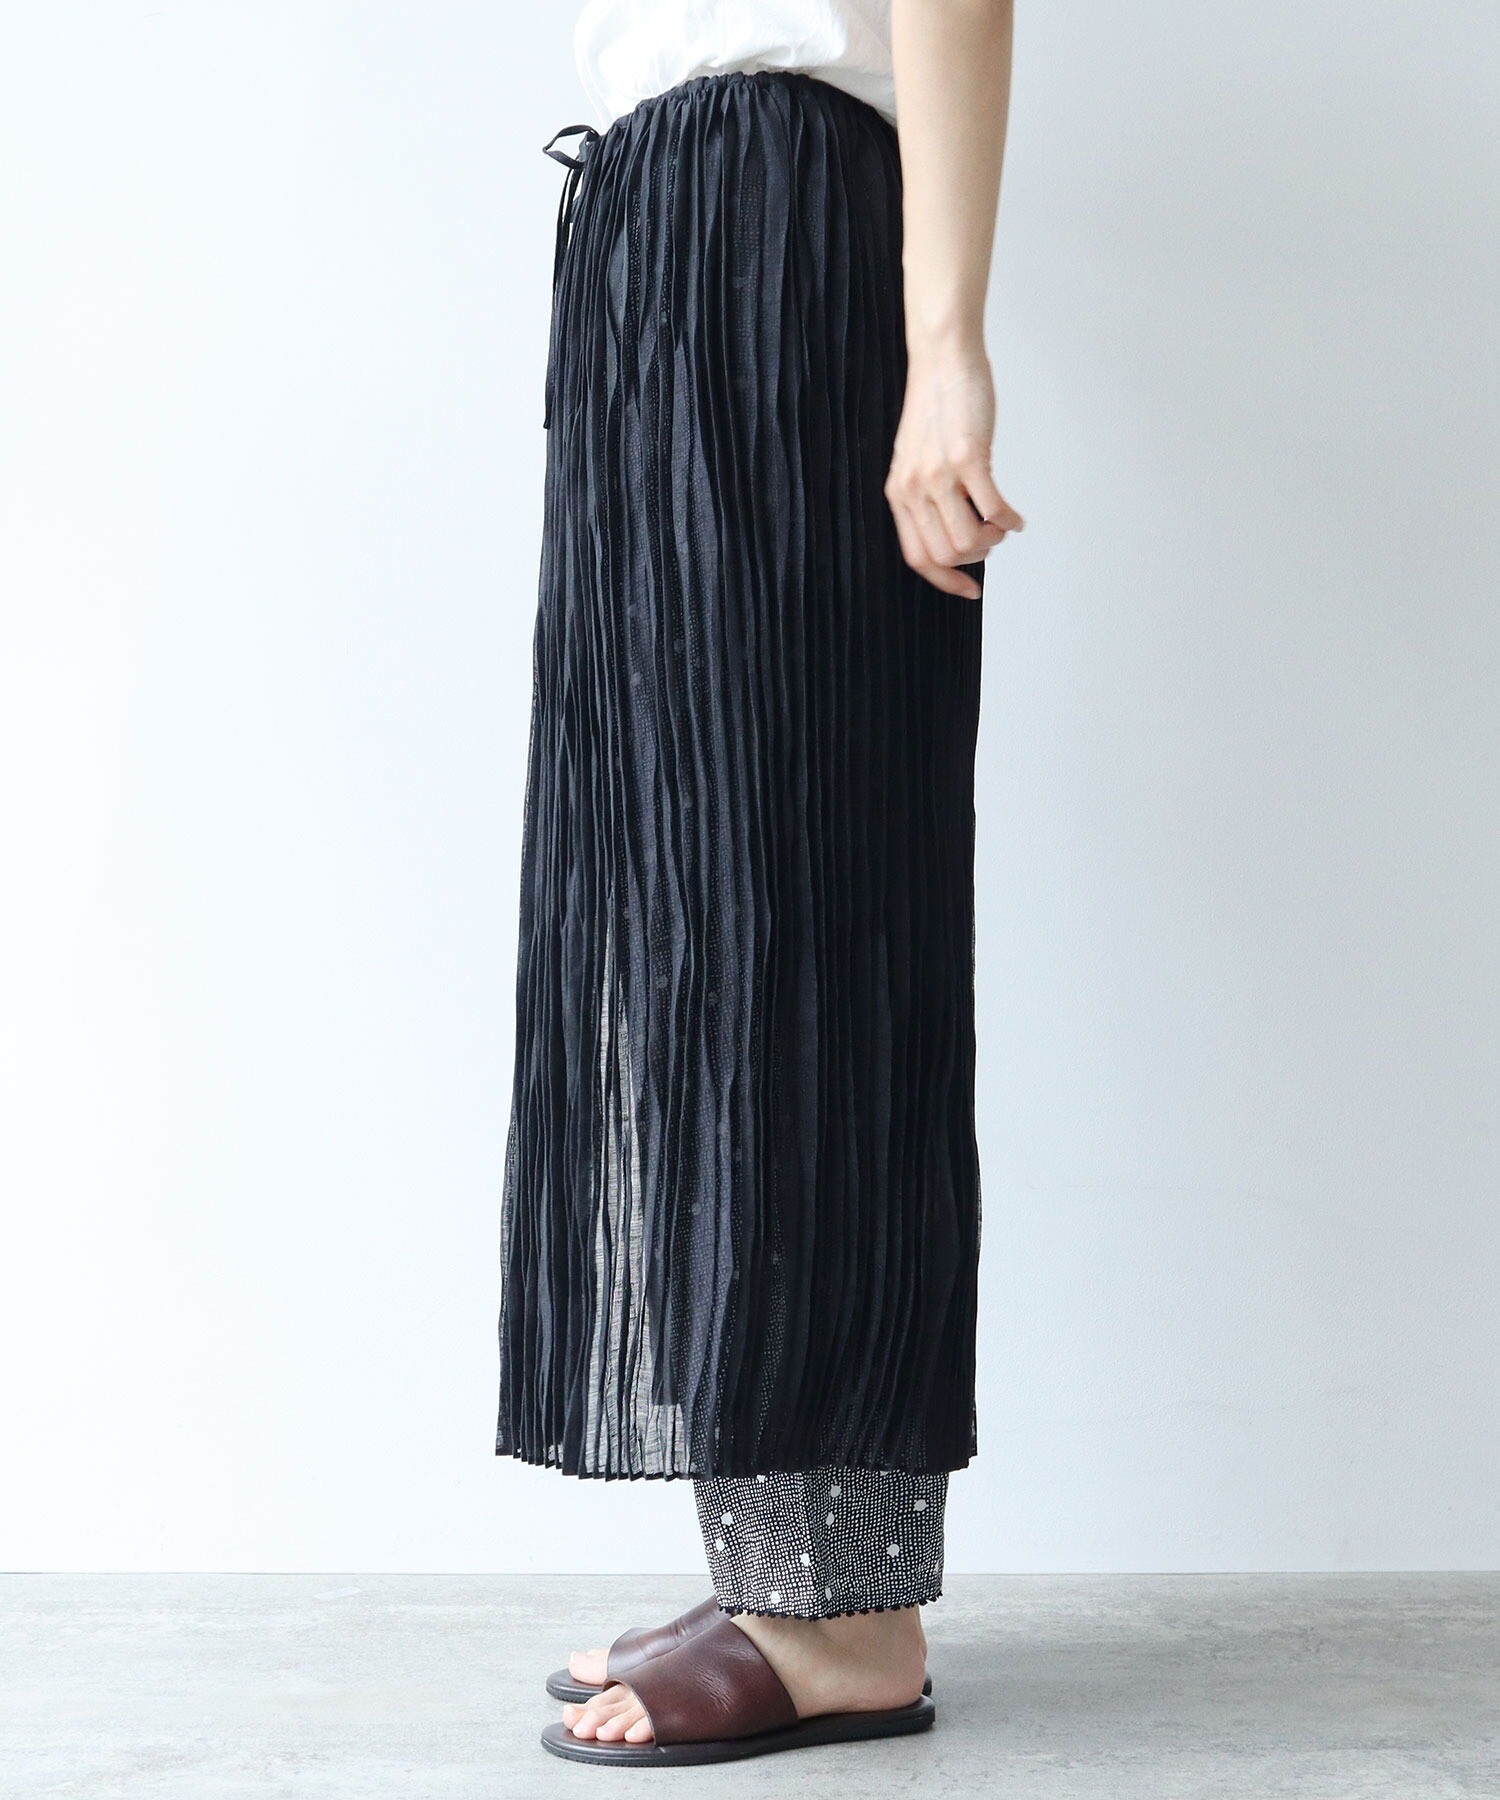 AMBIDEX Store 【予約販売】○シアー カールマイヤー プリーツスカート 